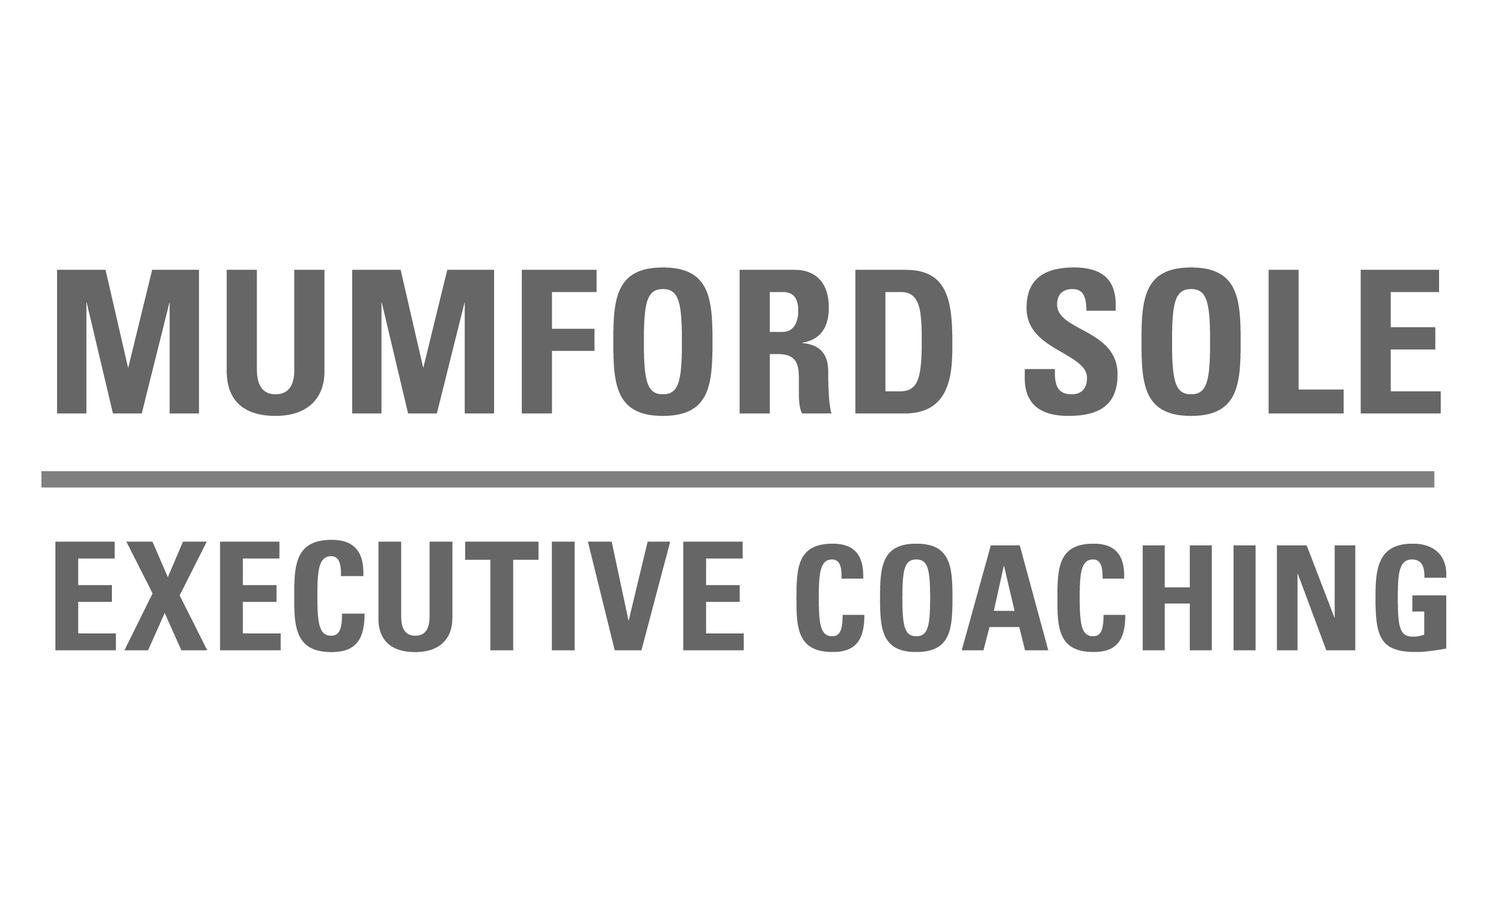 Mumford Sole Executive Coaching